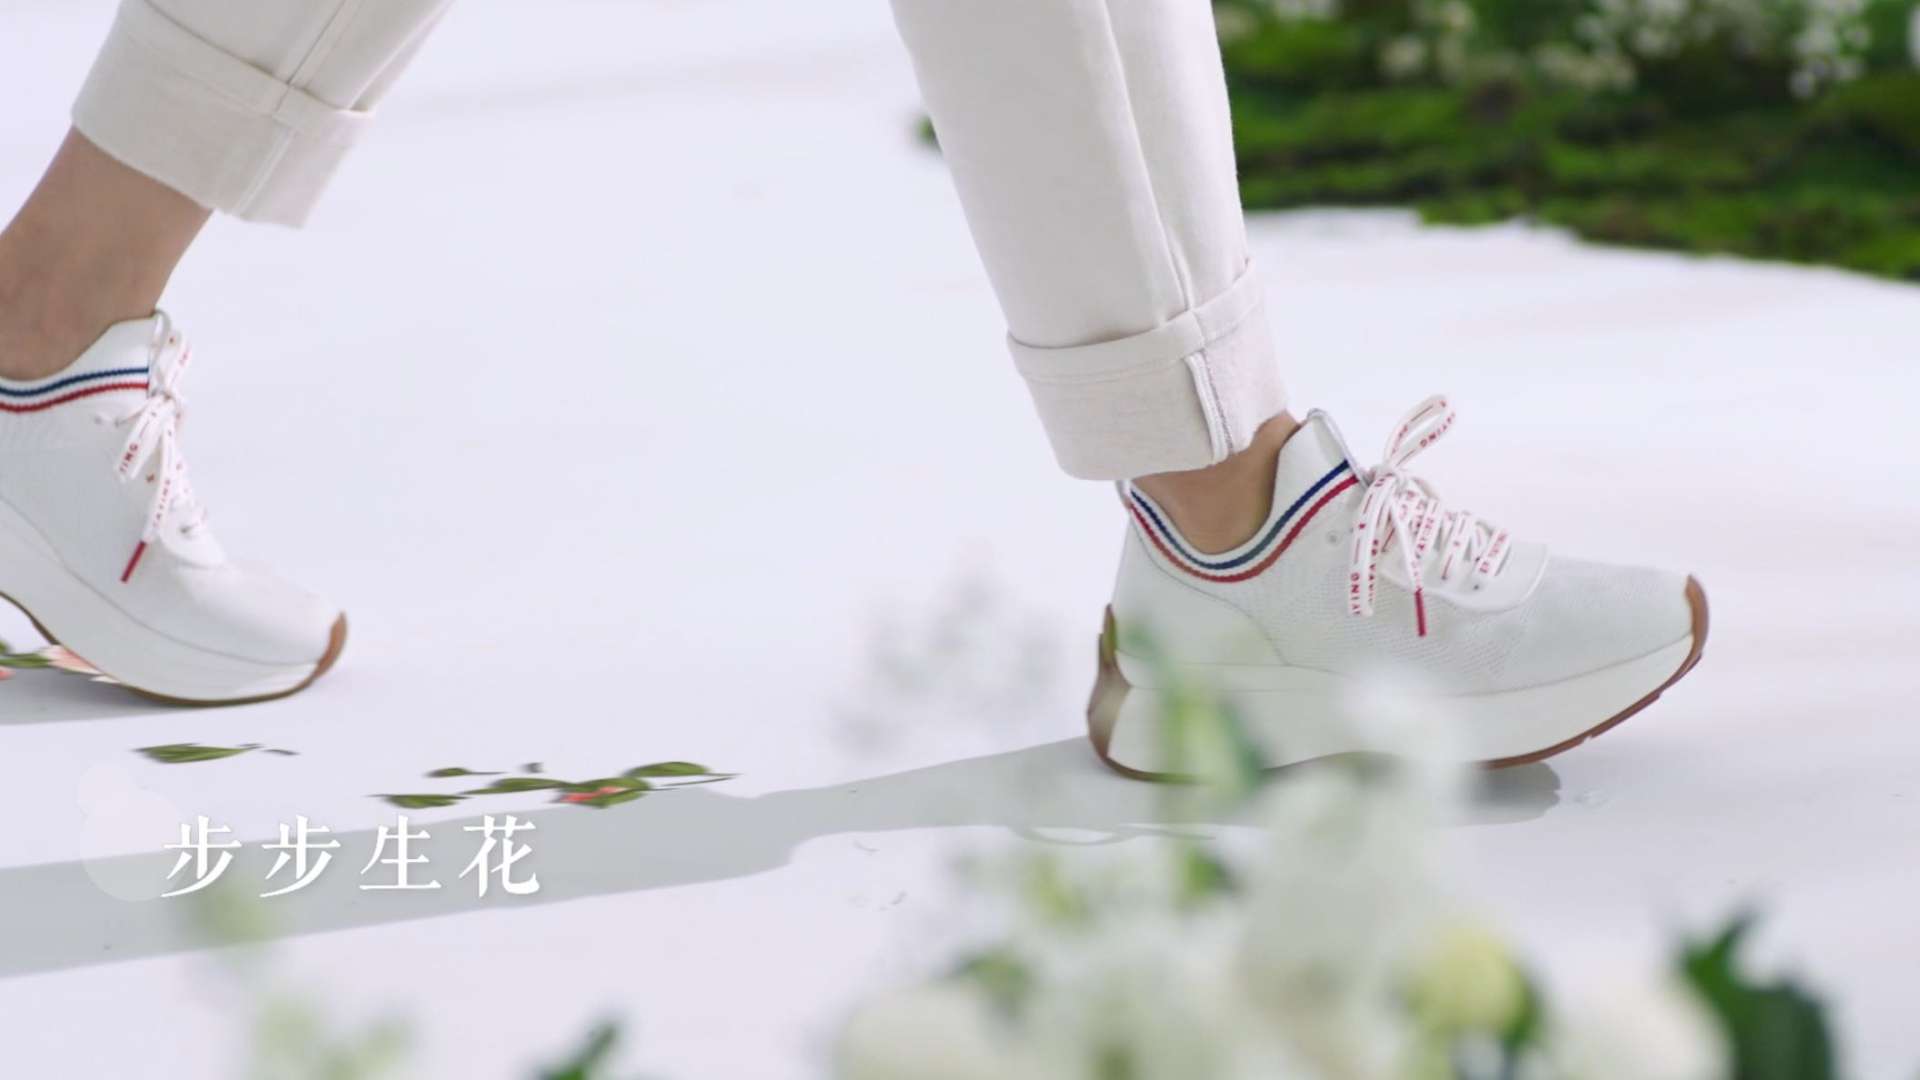 EP YAYING # 步步生花 # 飞织运动鞋新品首发产品视频